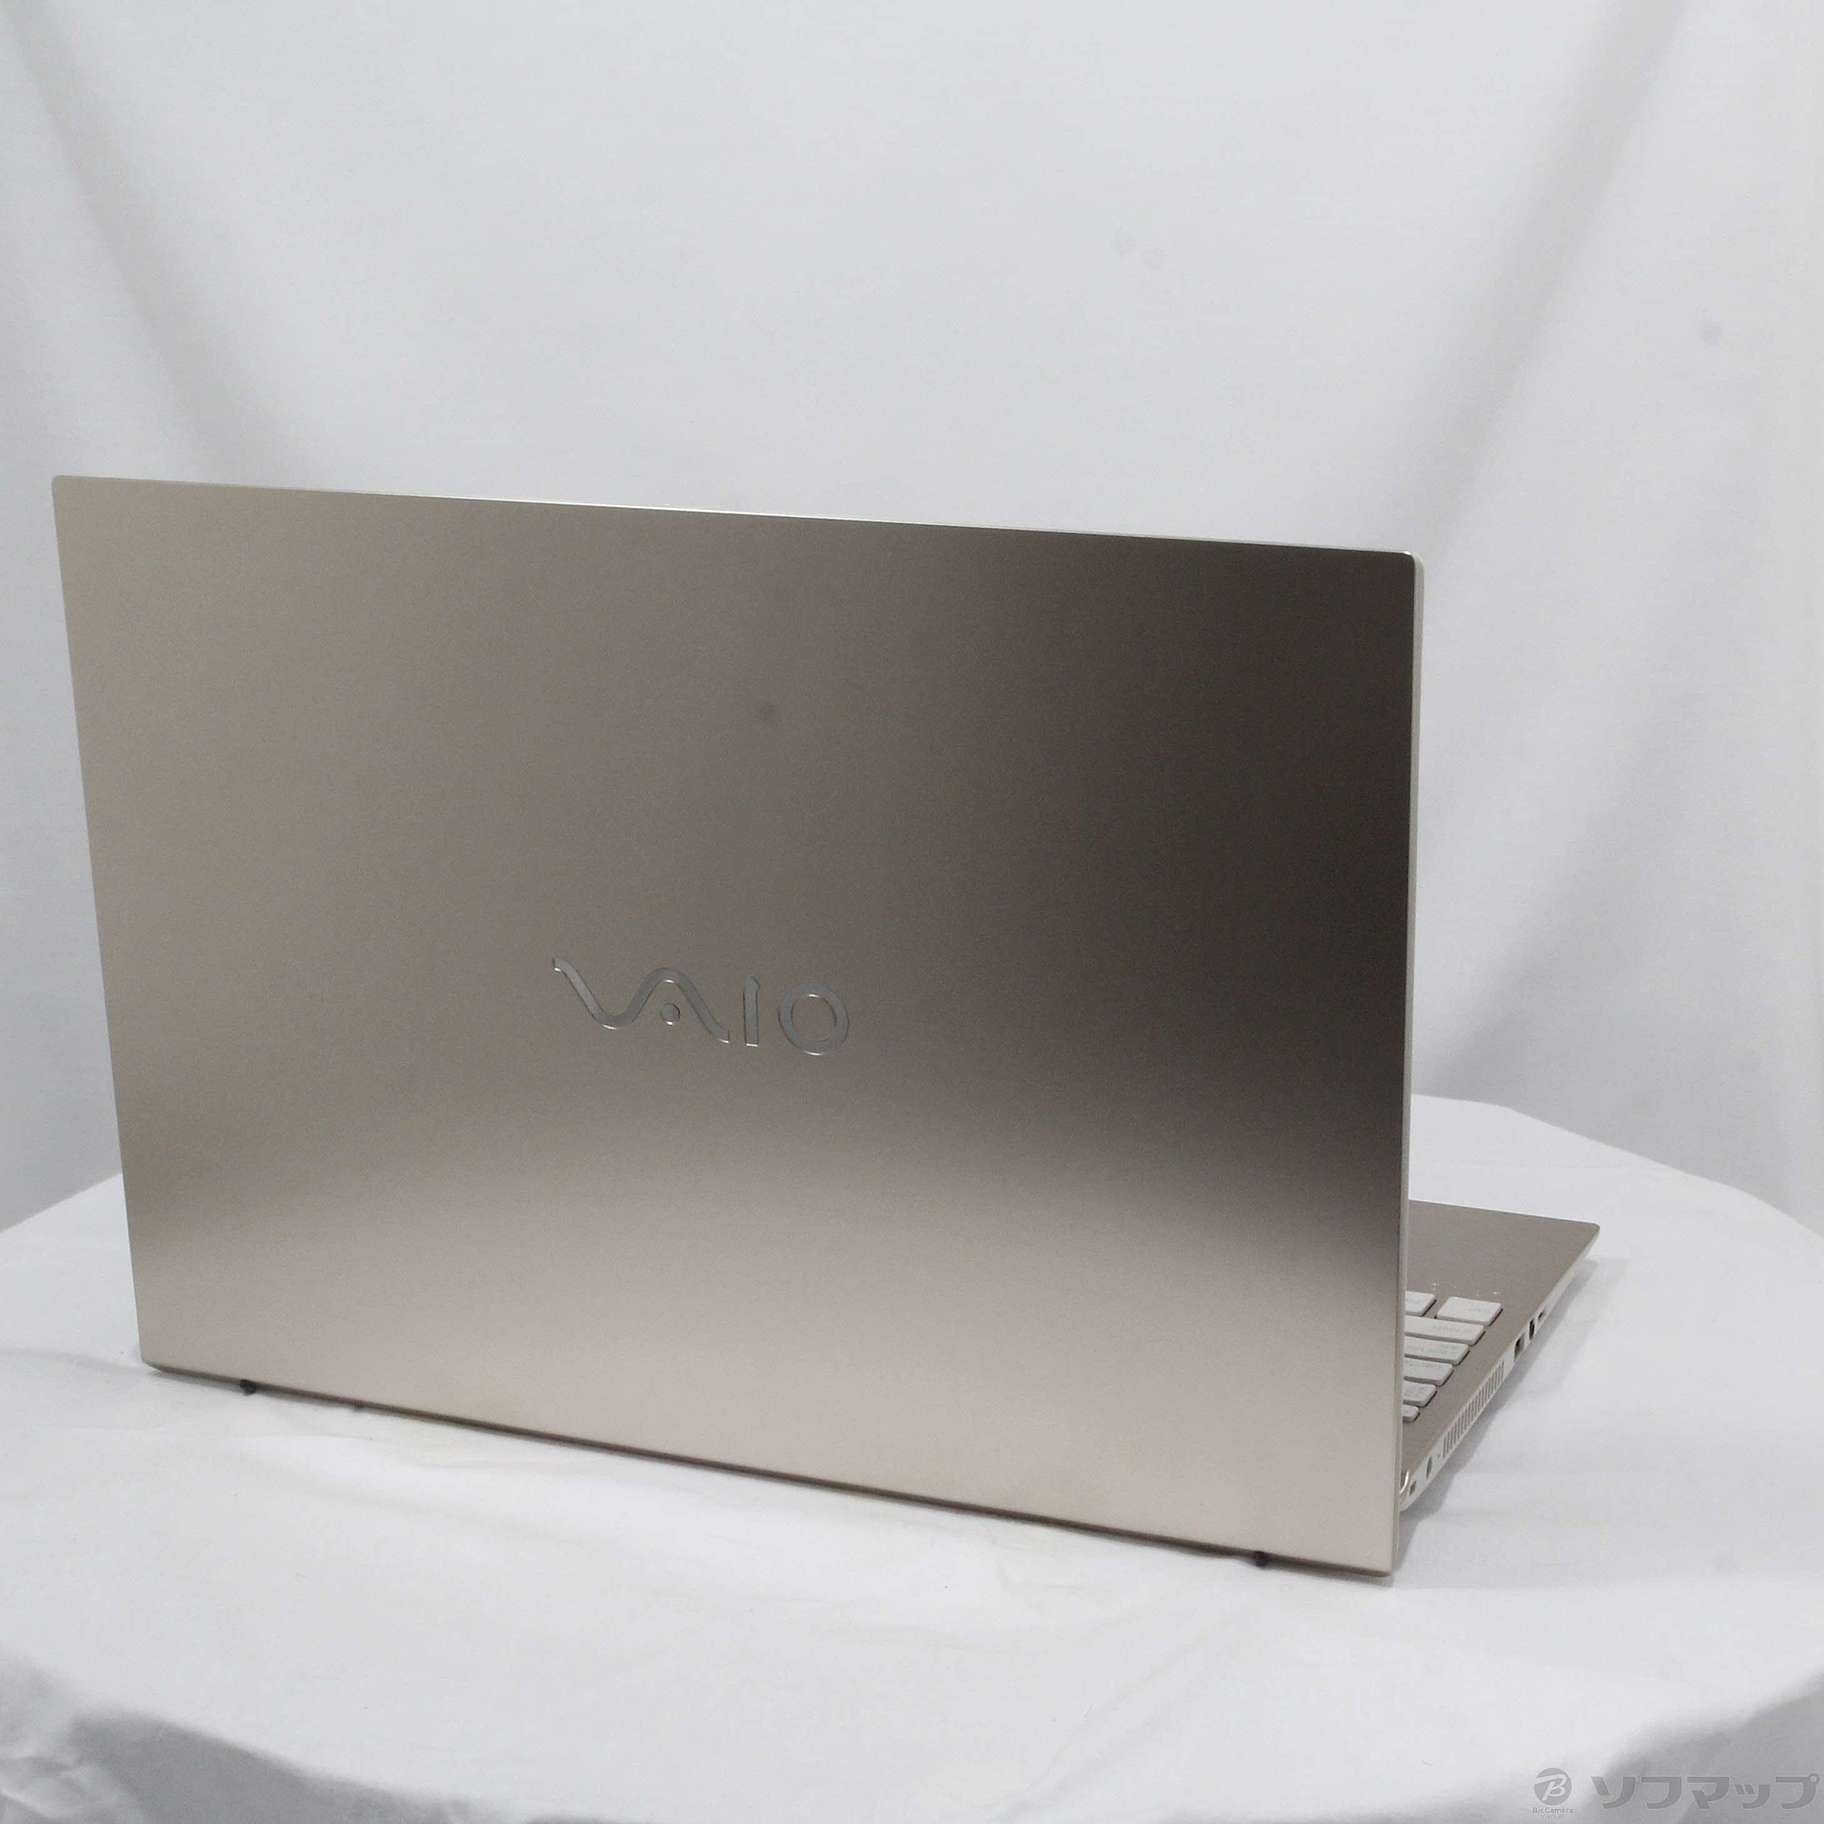 SONY VAIO SVT131B11N 【ジャンク】Core i5 4GB - PC/タブレット